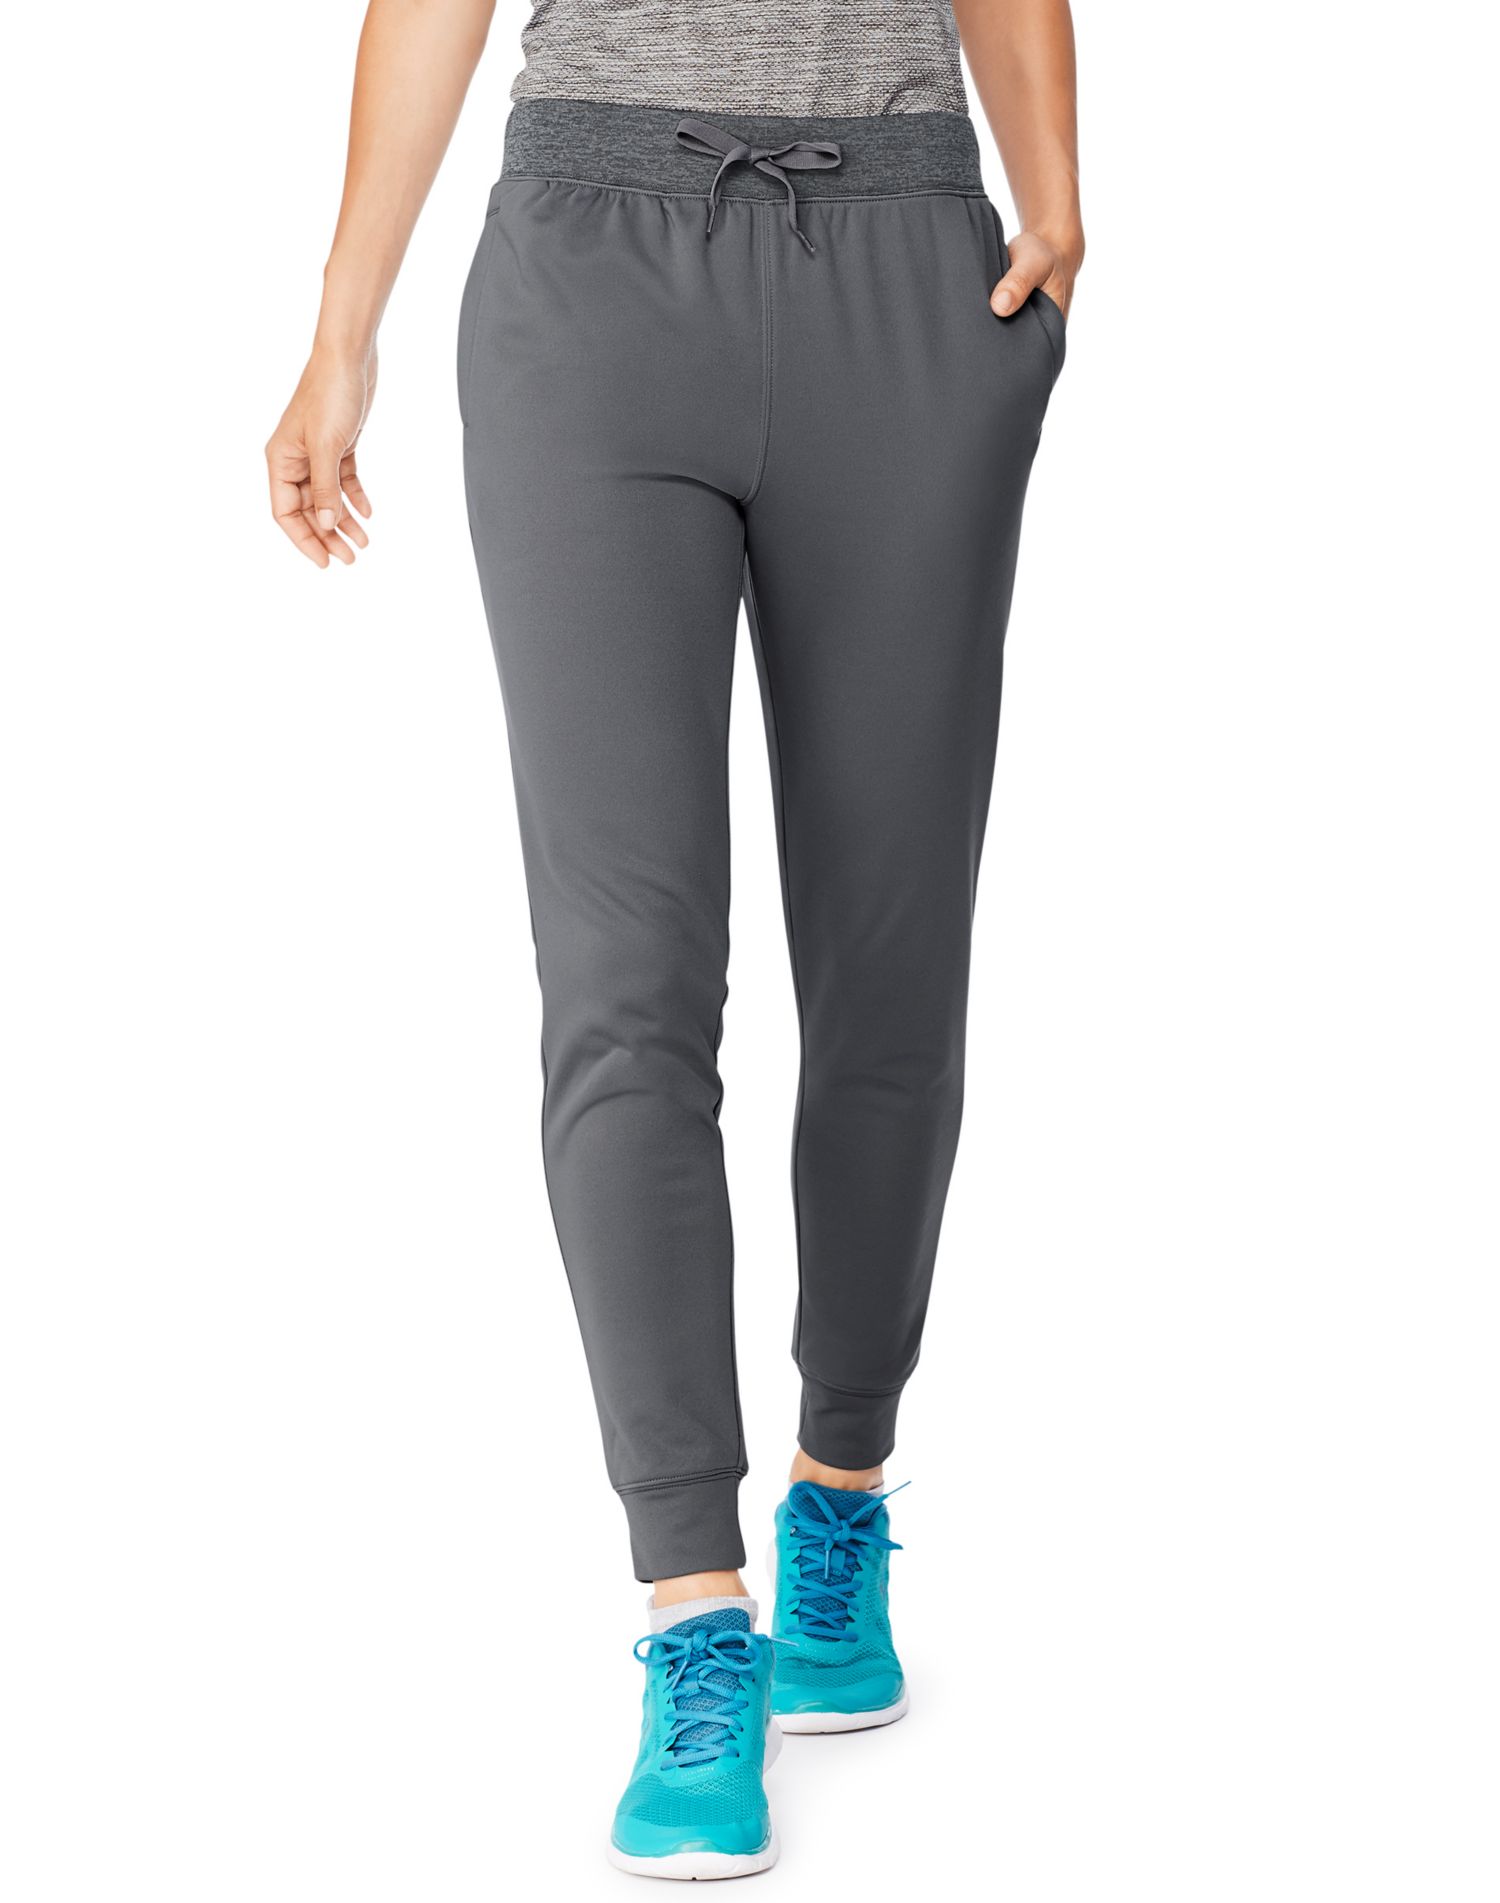 Hanes, Pants & Jumpsuits, Hanes Black Sweatpants Unisex Size Small